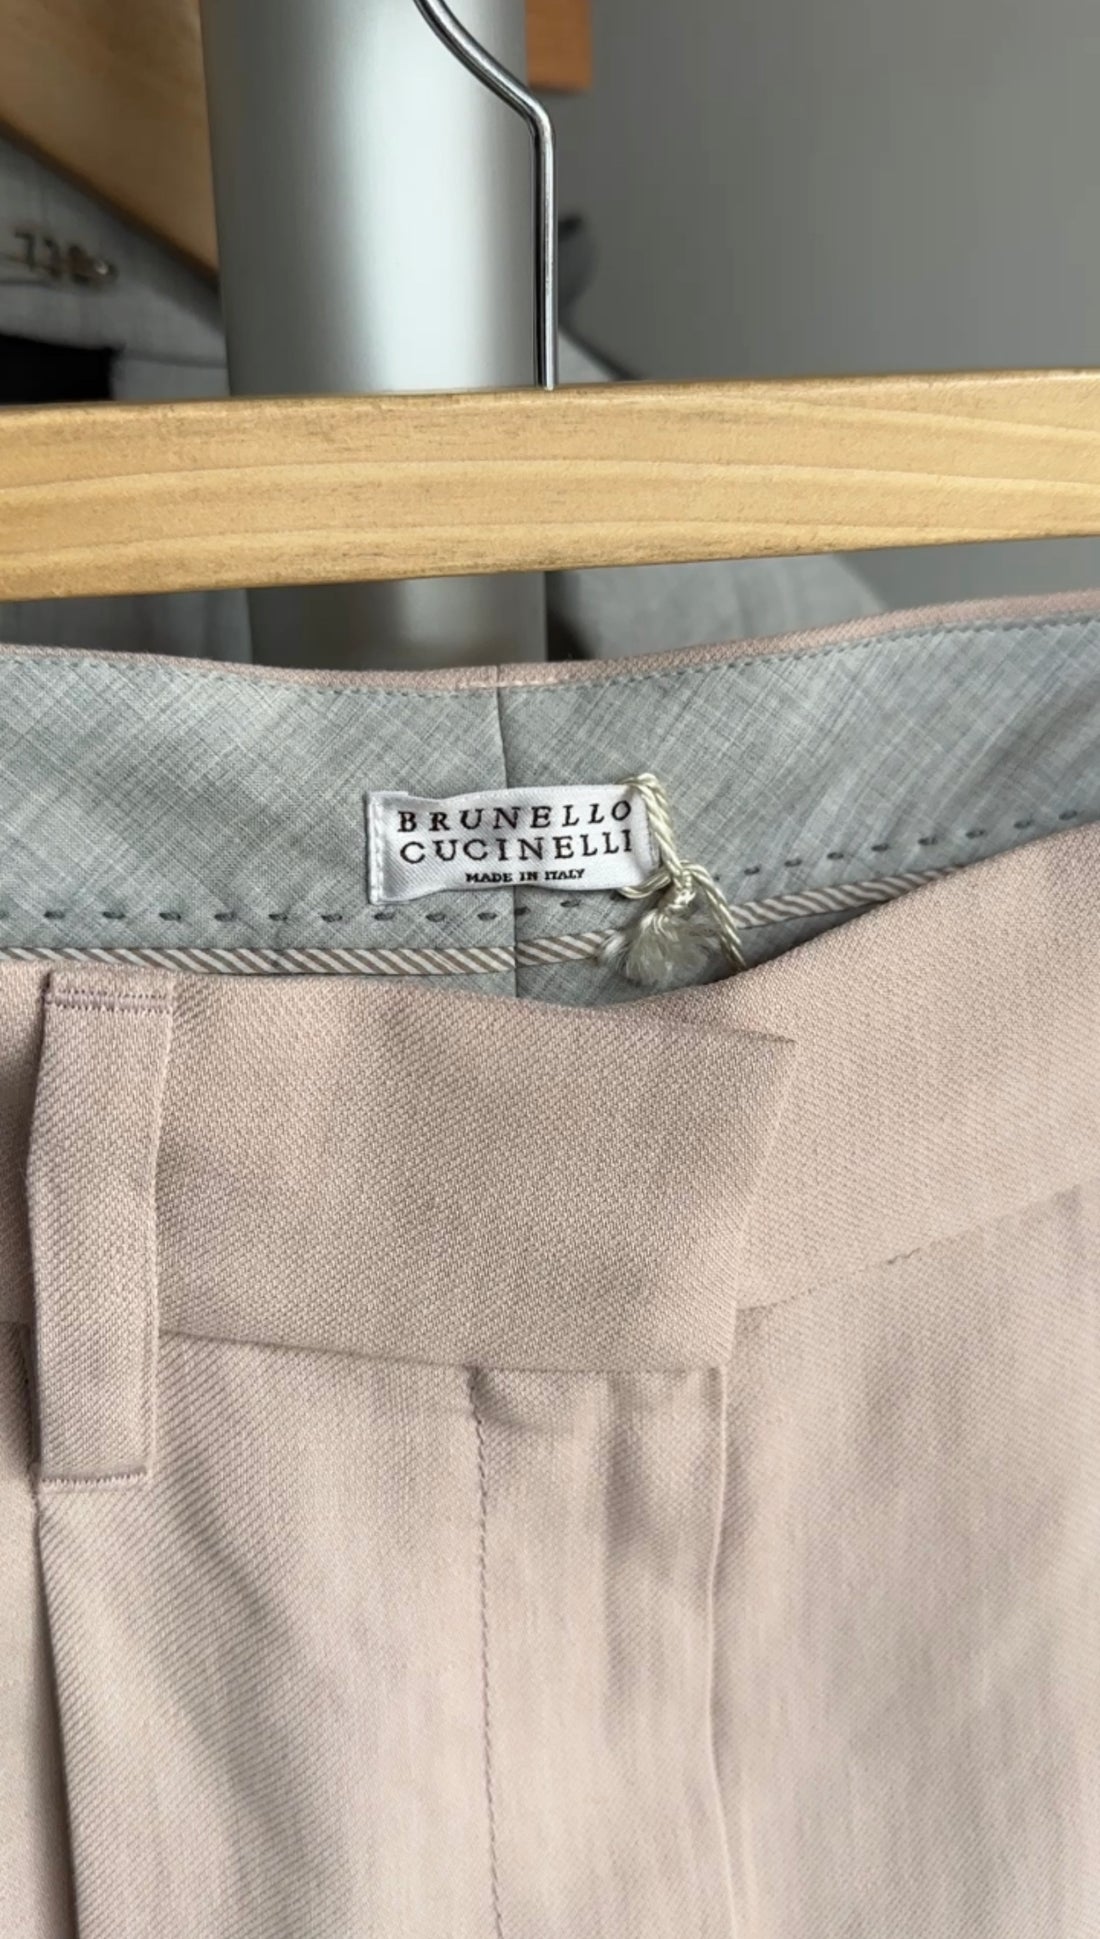 Brunello Cucinelli Light Shell Pink Linen Pants - IT36 / FR32 / USA0